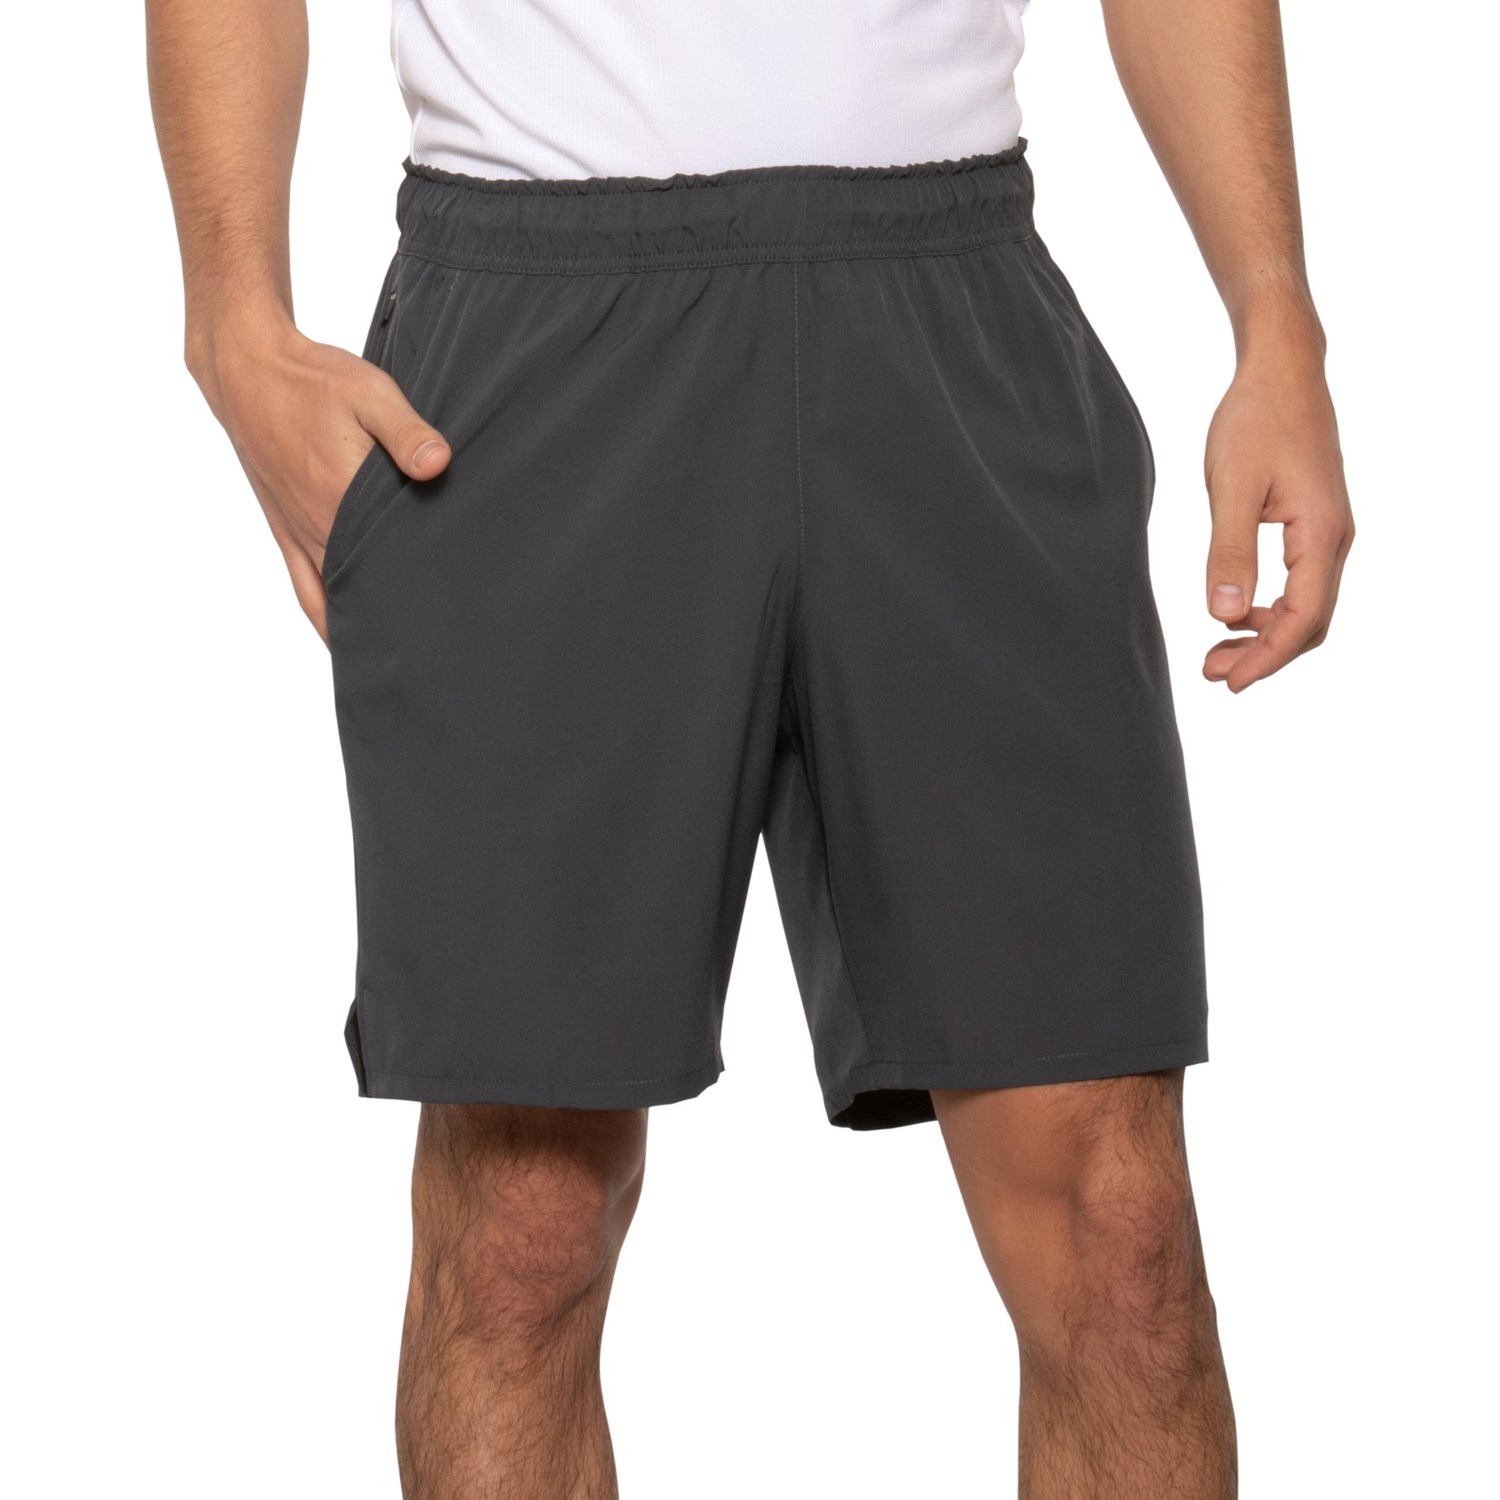 Eddie Bauer Horizon Shorts (For Men) - Save 32%